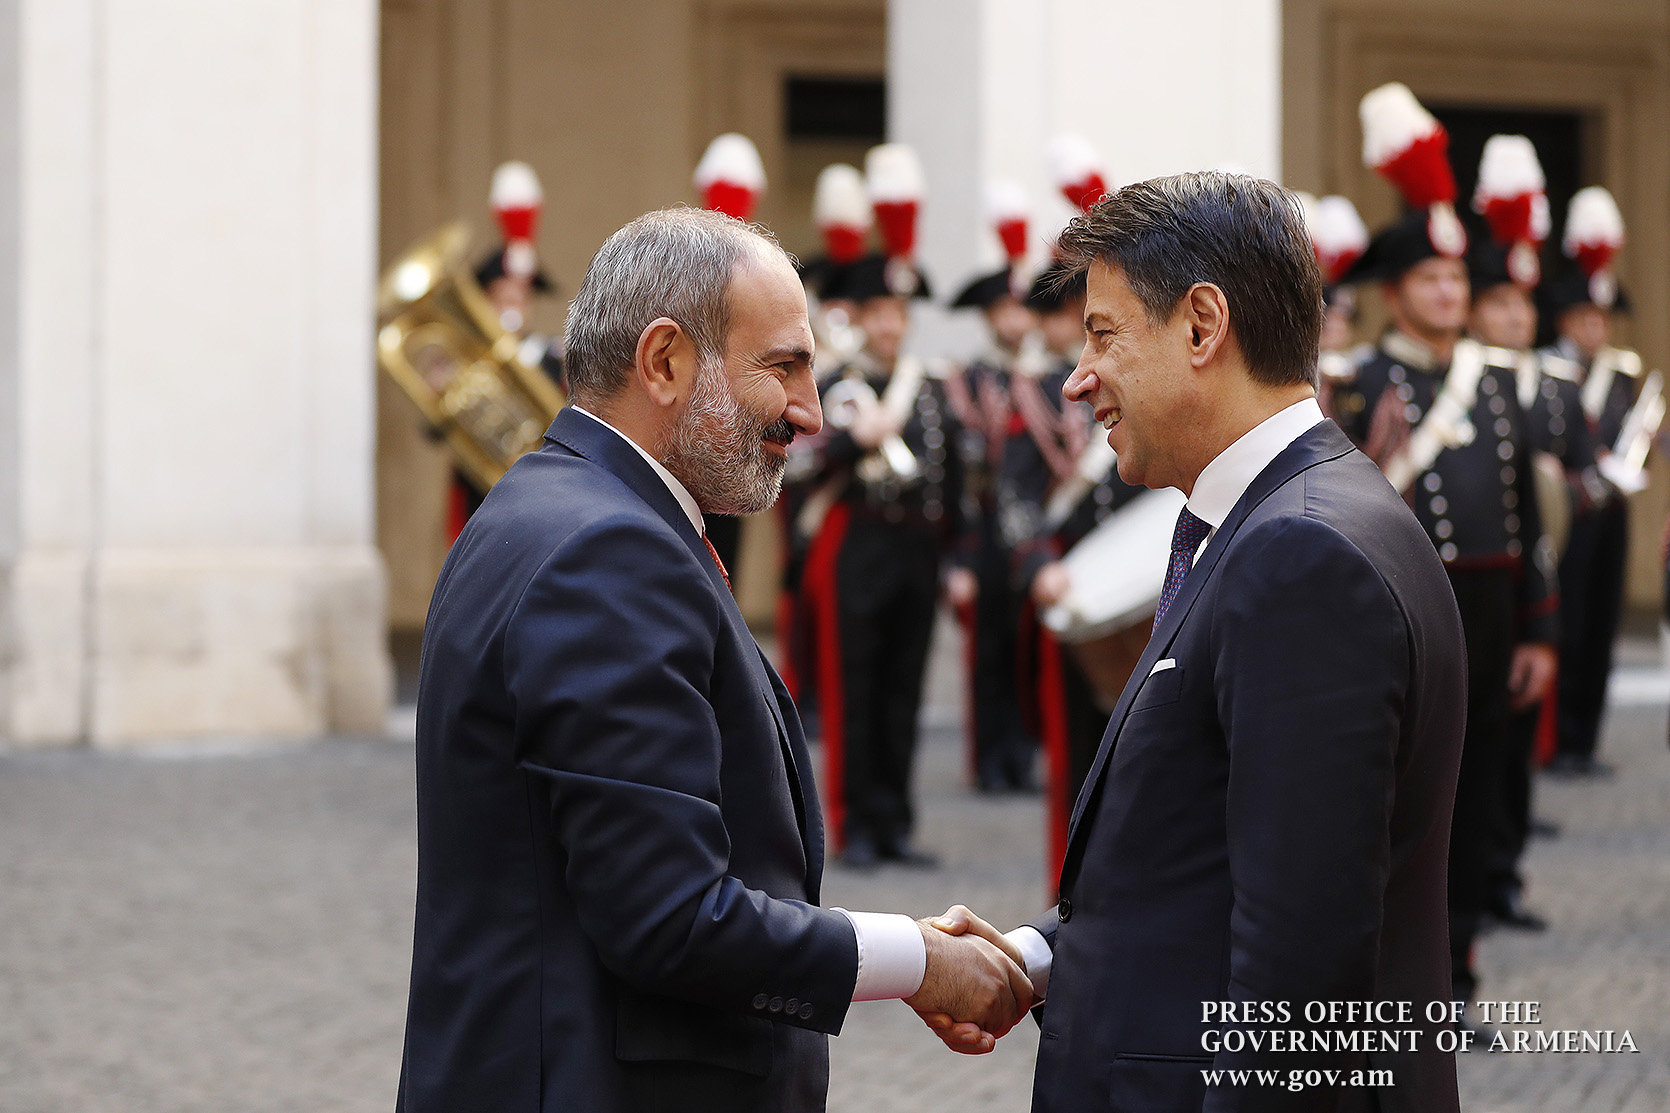 В Риме состоялись переговоры высокого уровня между премьер-министрами Армении и Италии